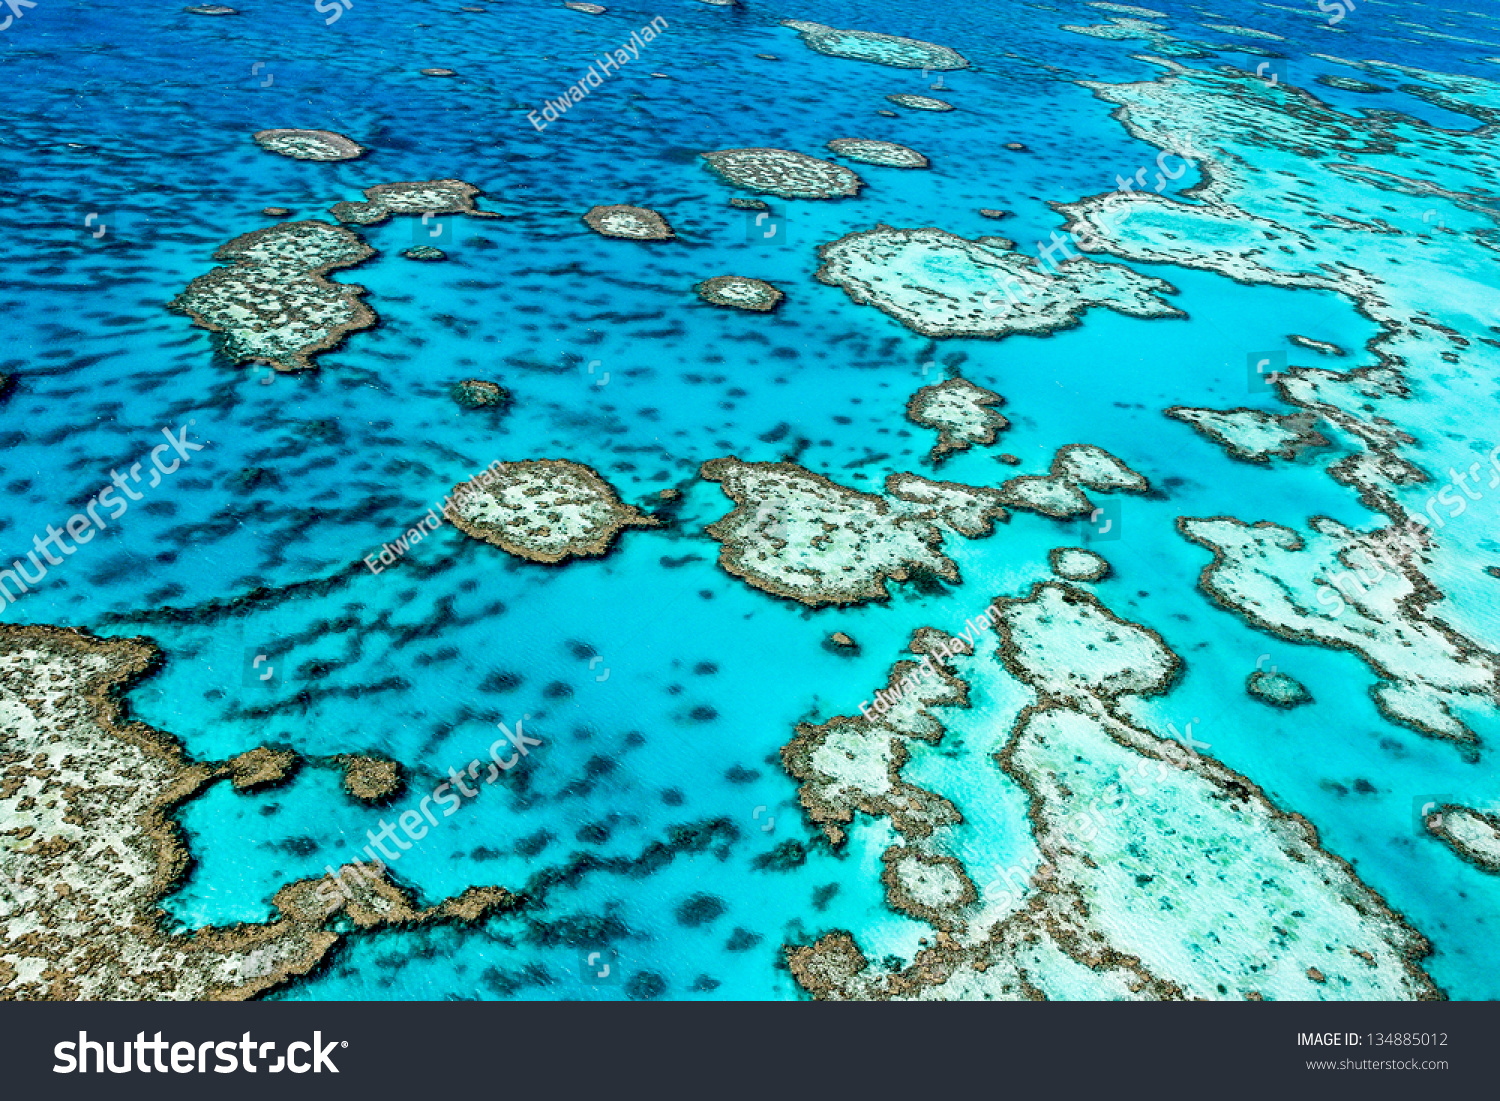 The Great Barrier Reef in Queensland, Australia. #134885012